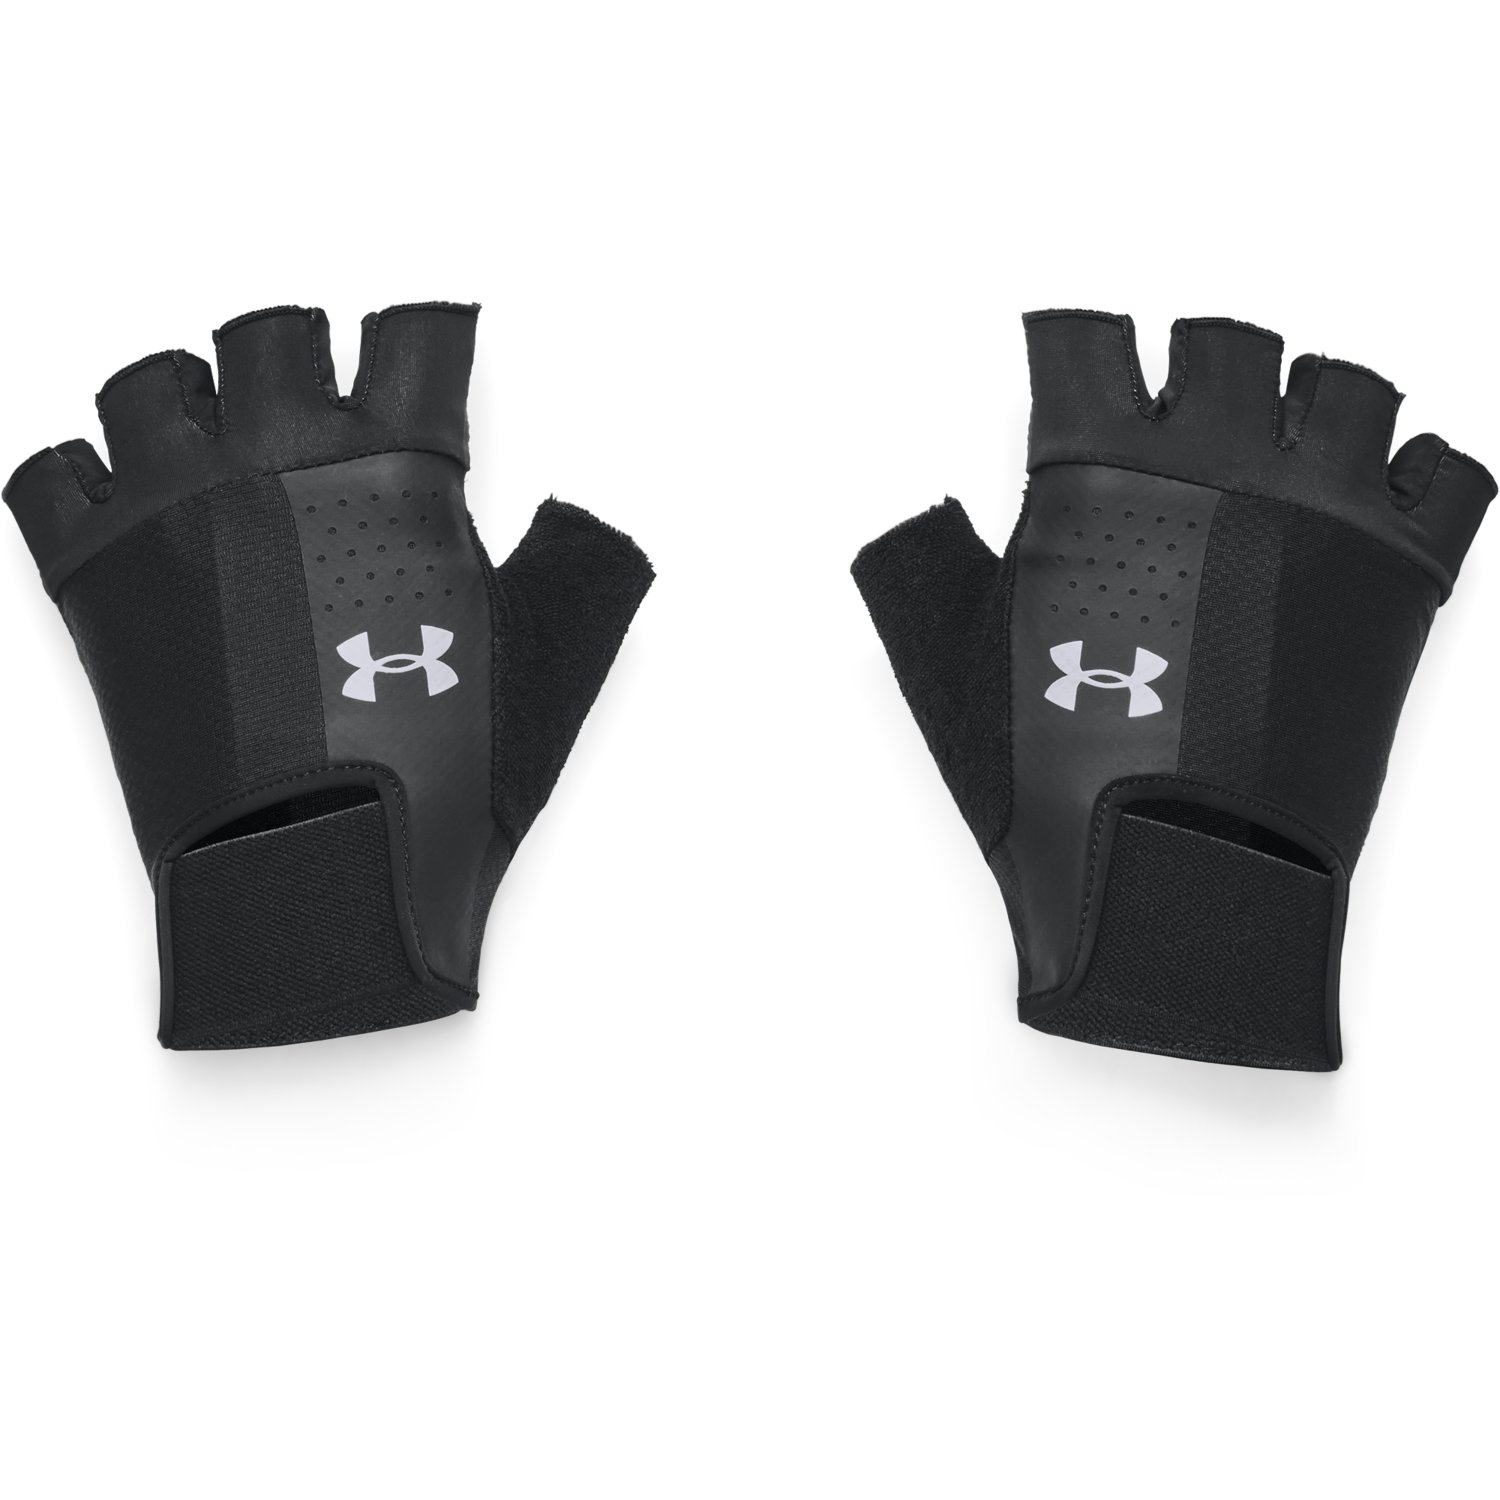 Hay una tendencia a tiempo jugador Men's UA Training Gloves | Under Armour